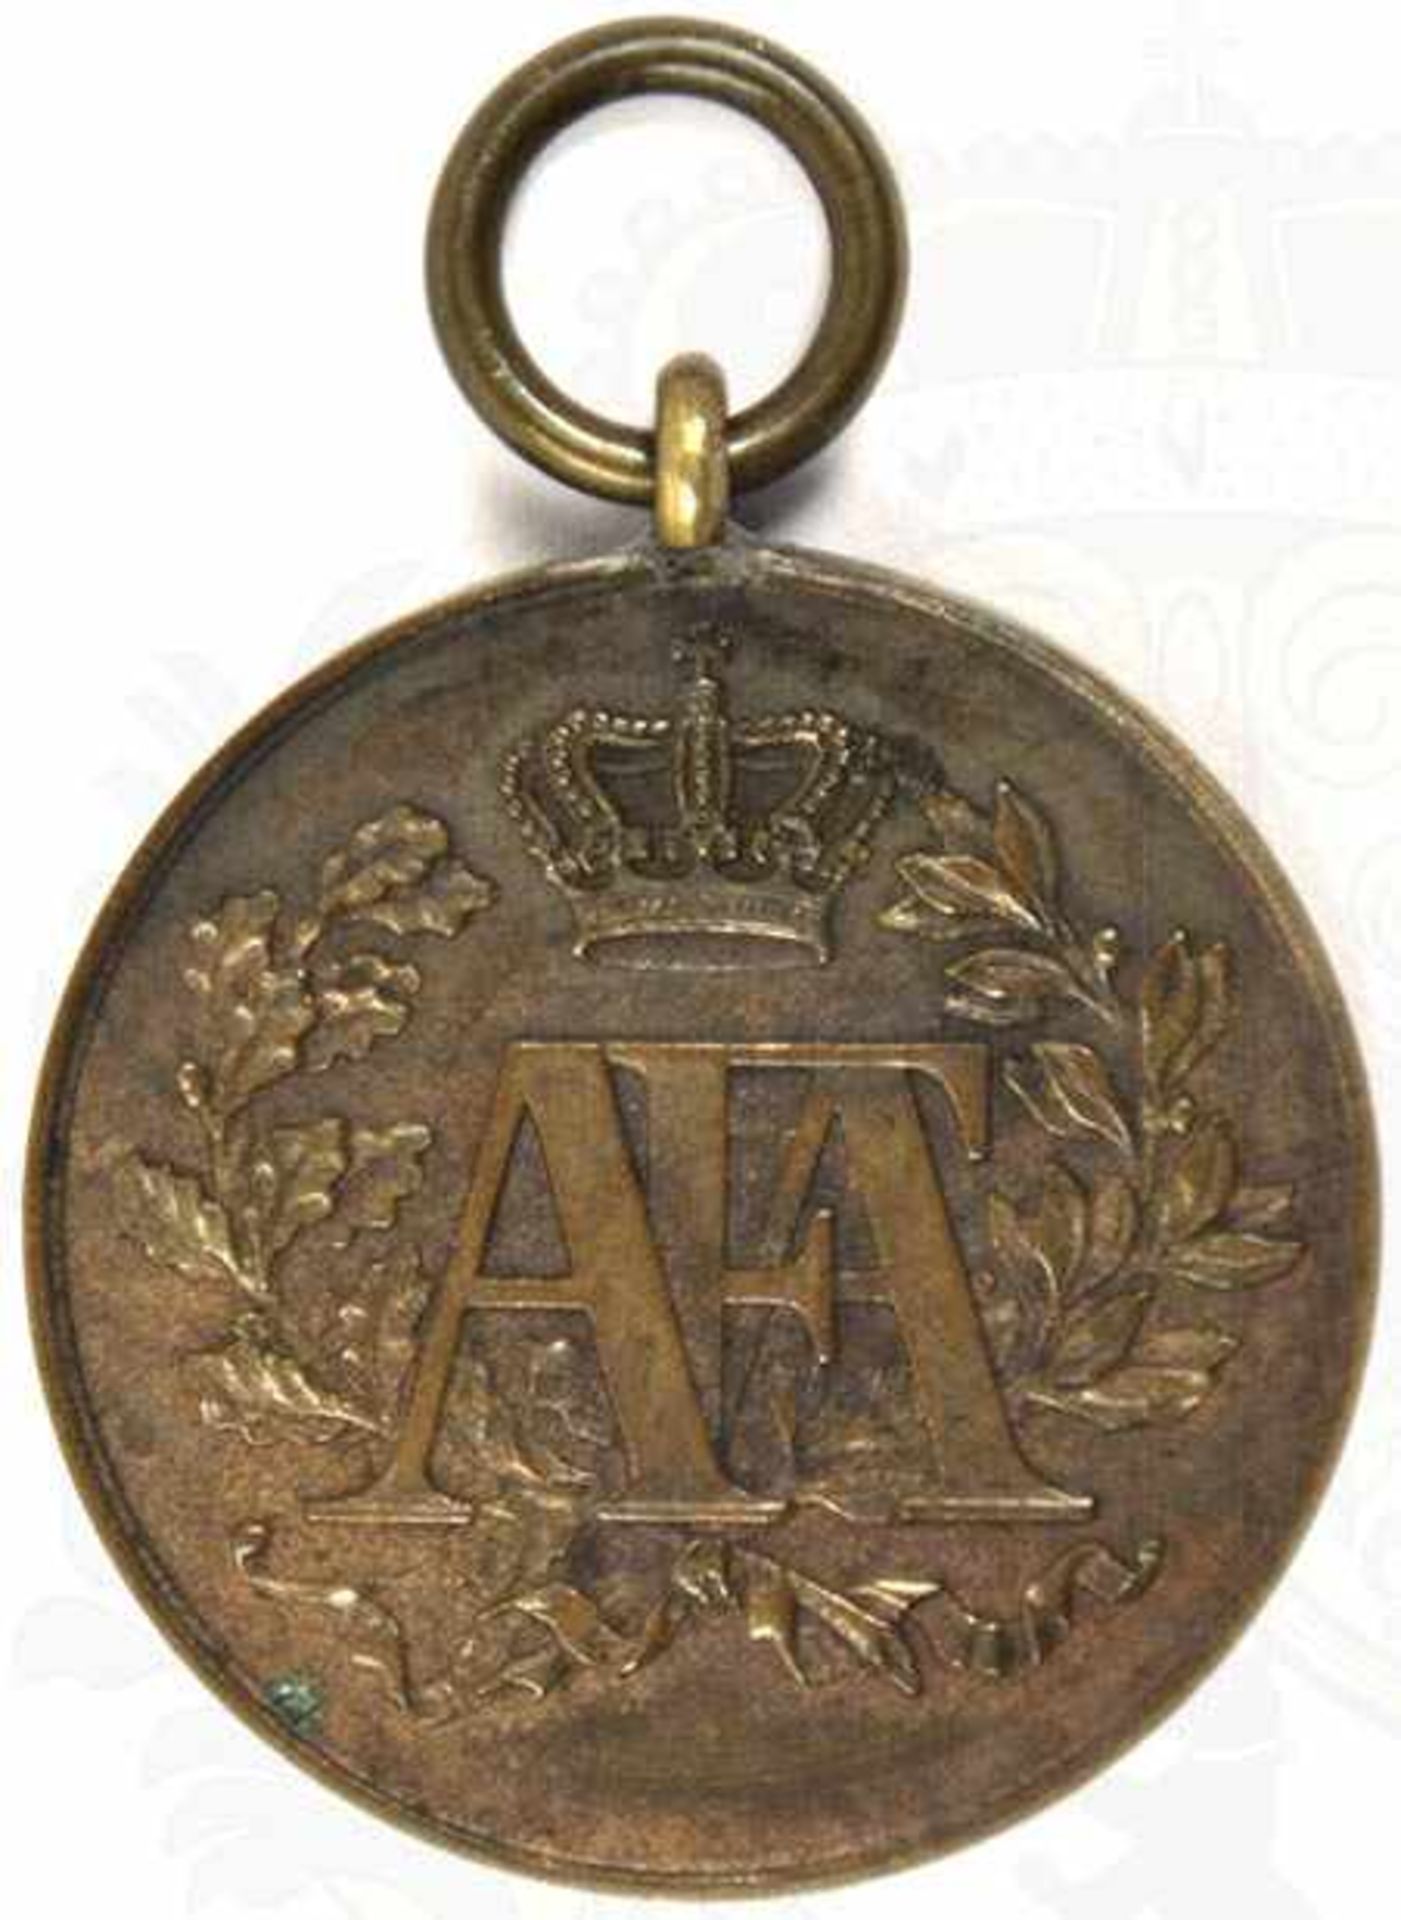 DIENSTAUSZEICHNUNG FÜR 10 JAHRE, Medaille für lange und gute Dienste, Bronze, 1. Prägung 1832-